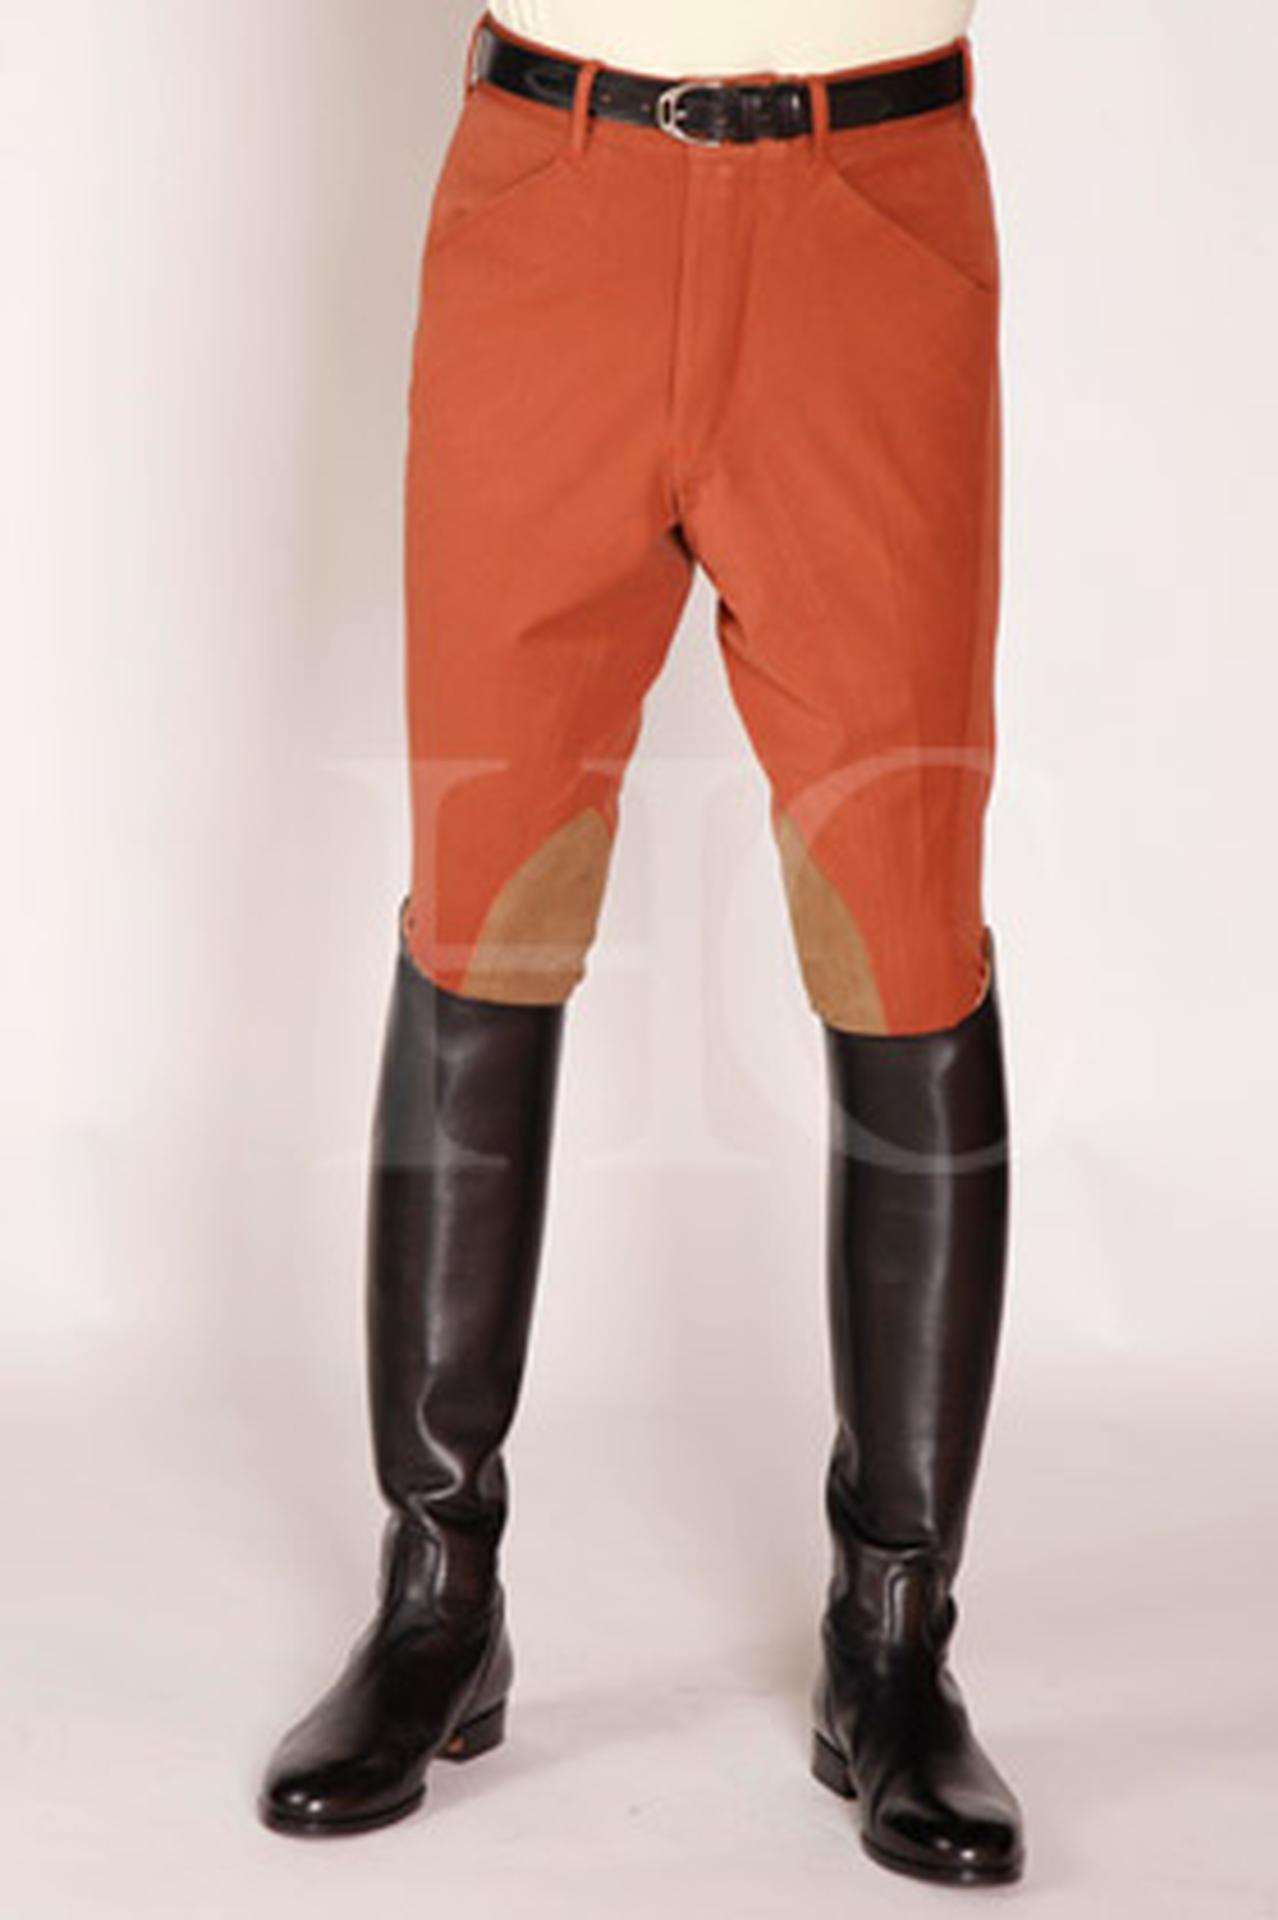 Harcour - Men's riding pants fix system grip Costas white